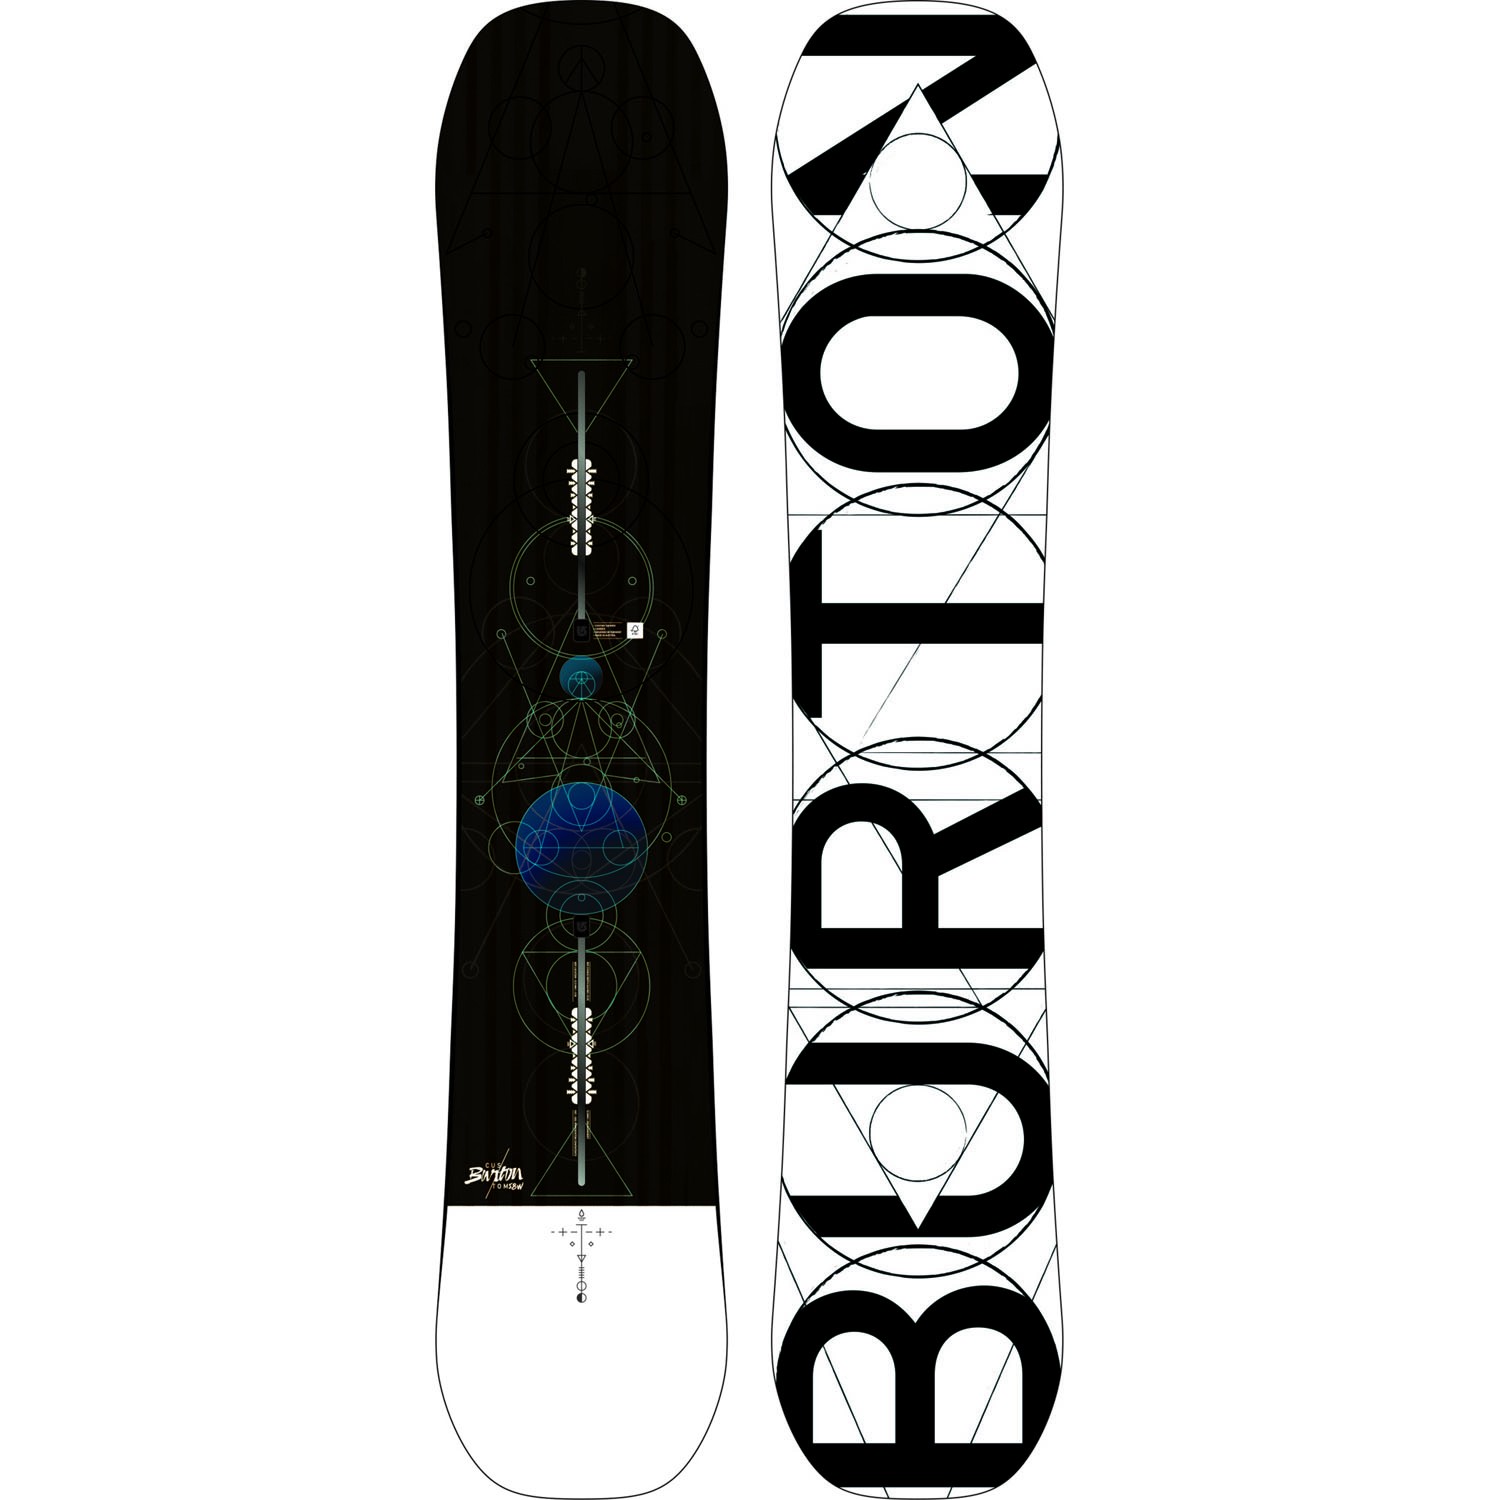 sim:  burton-custom-camber-snowboard-2018-158w-1.jpg
Grntleme: 343
Byklk:  156.0 KB (Kilobyte)